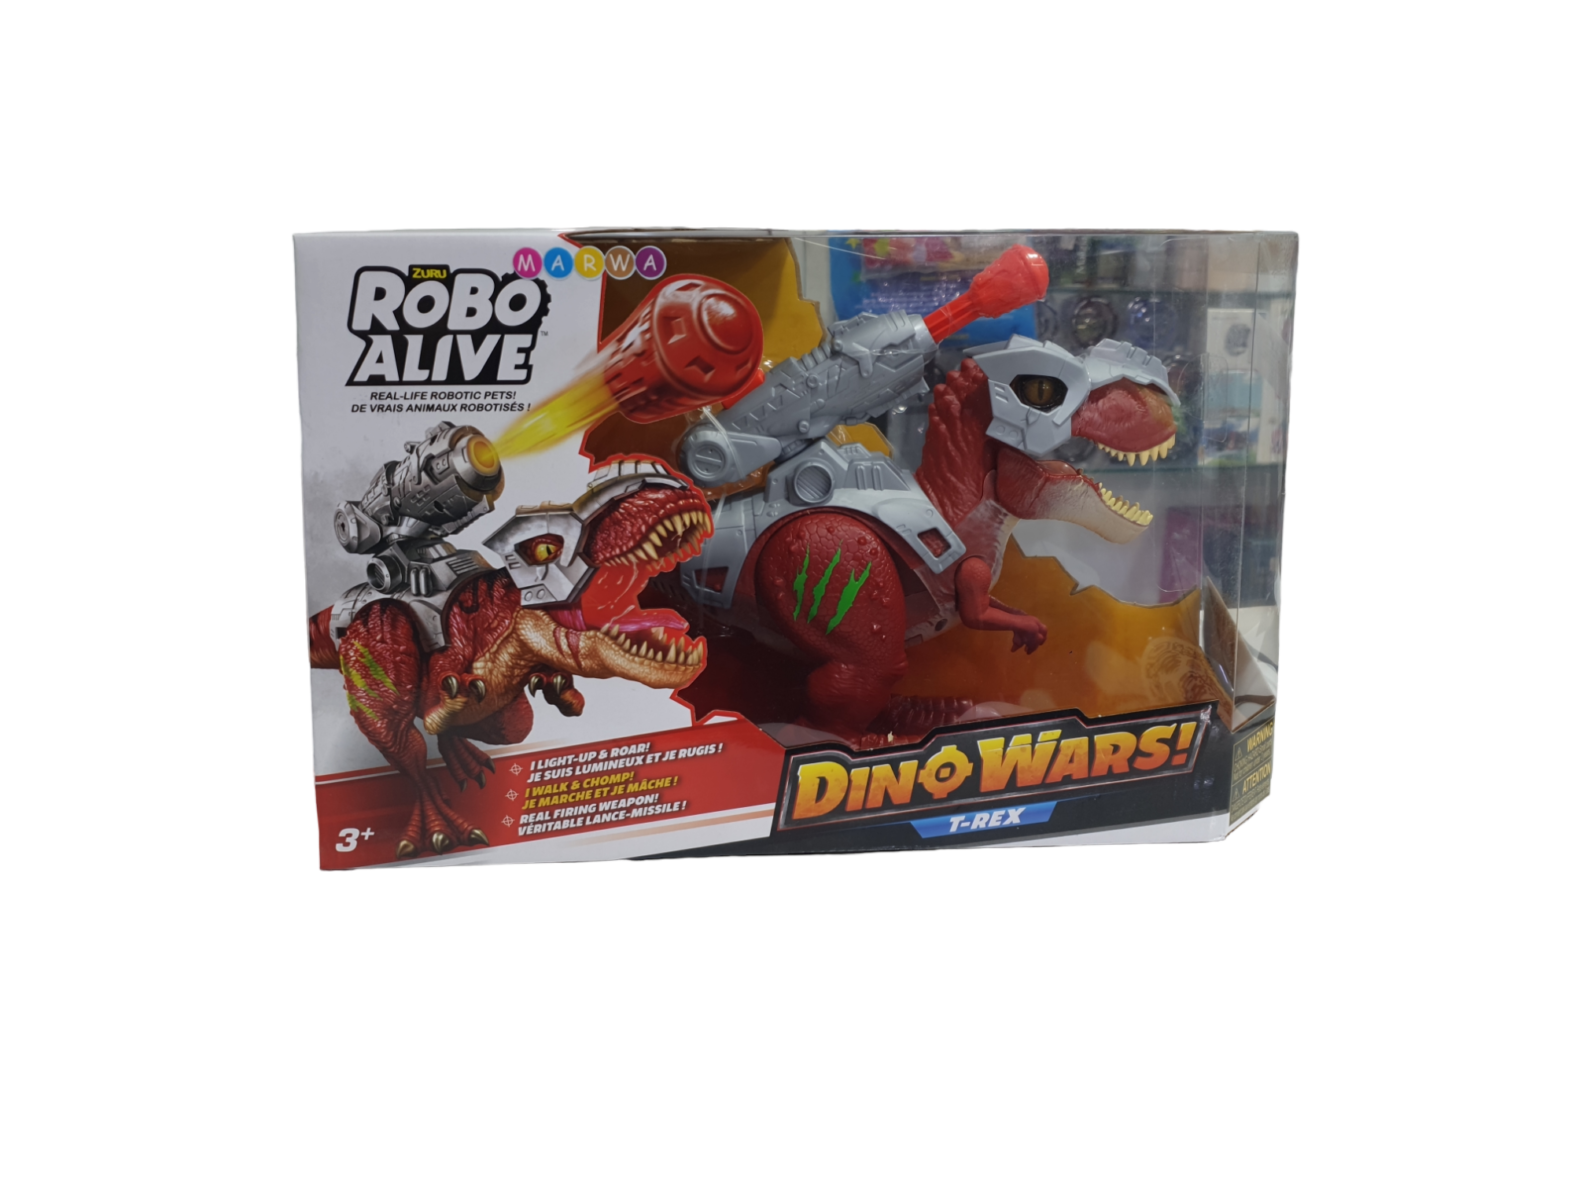 Robo alive dino wars t-rex Zuru